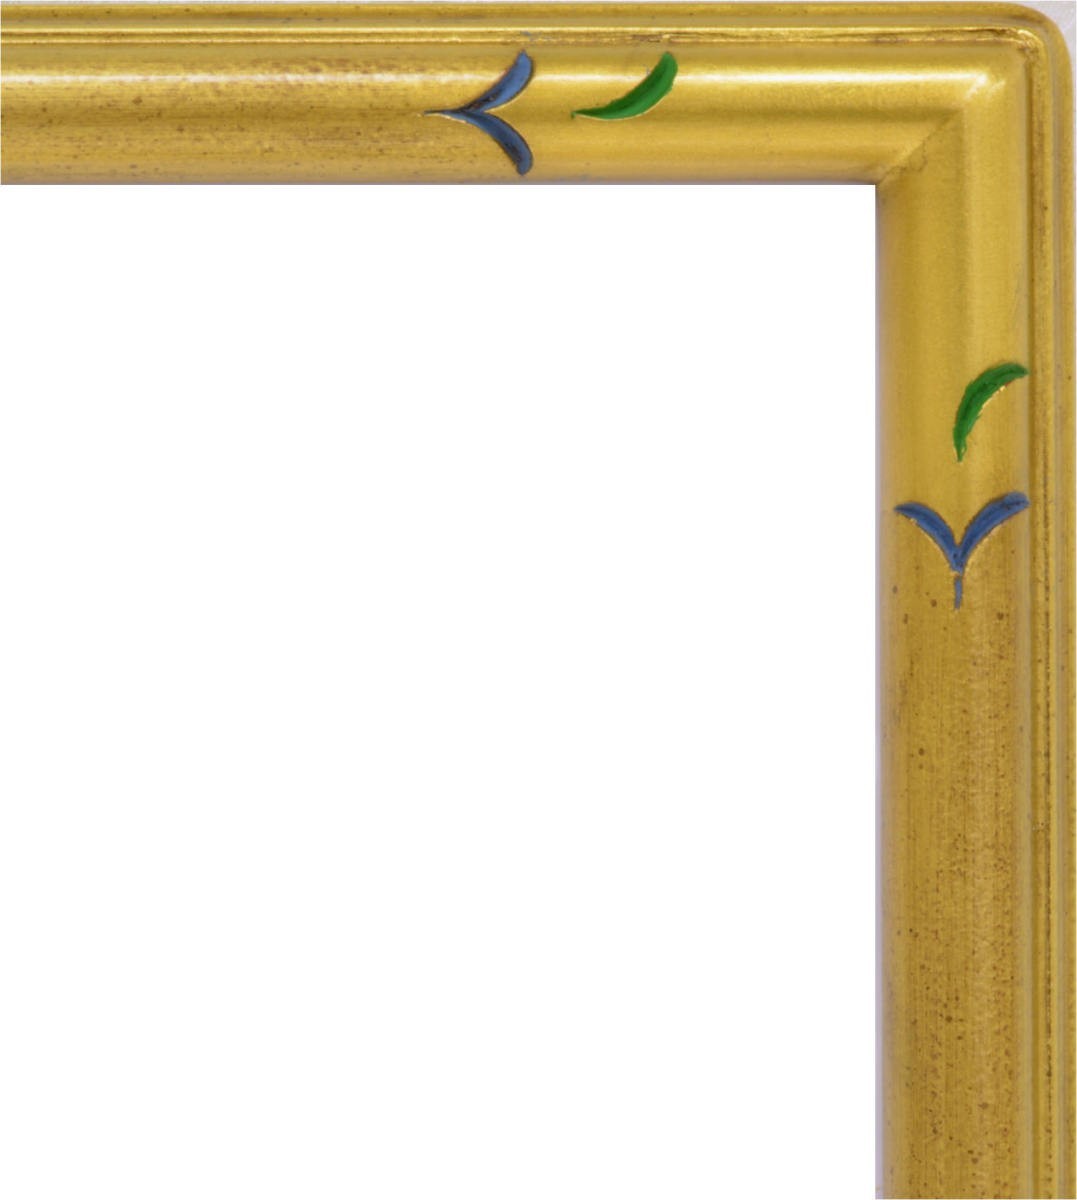 デッサン用額縁 木製フレーム 7201 半切サイズ ゴールド_画像2